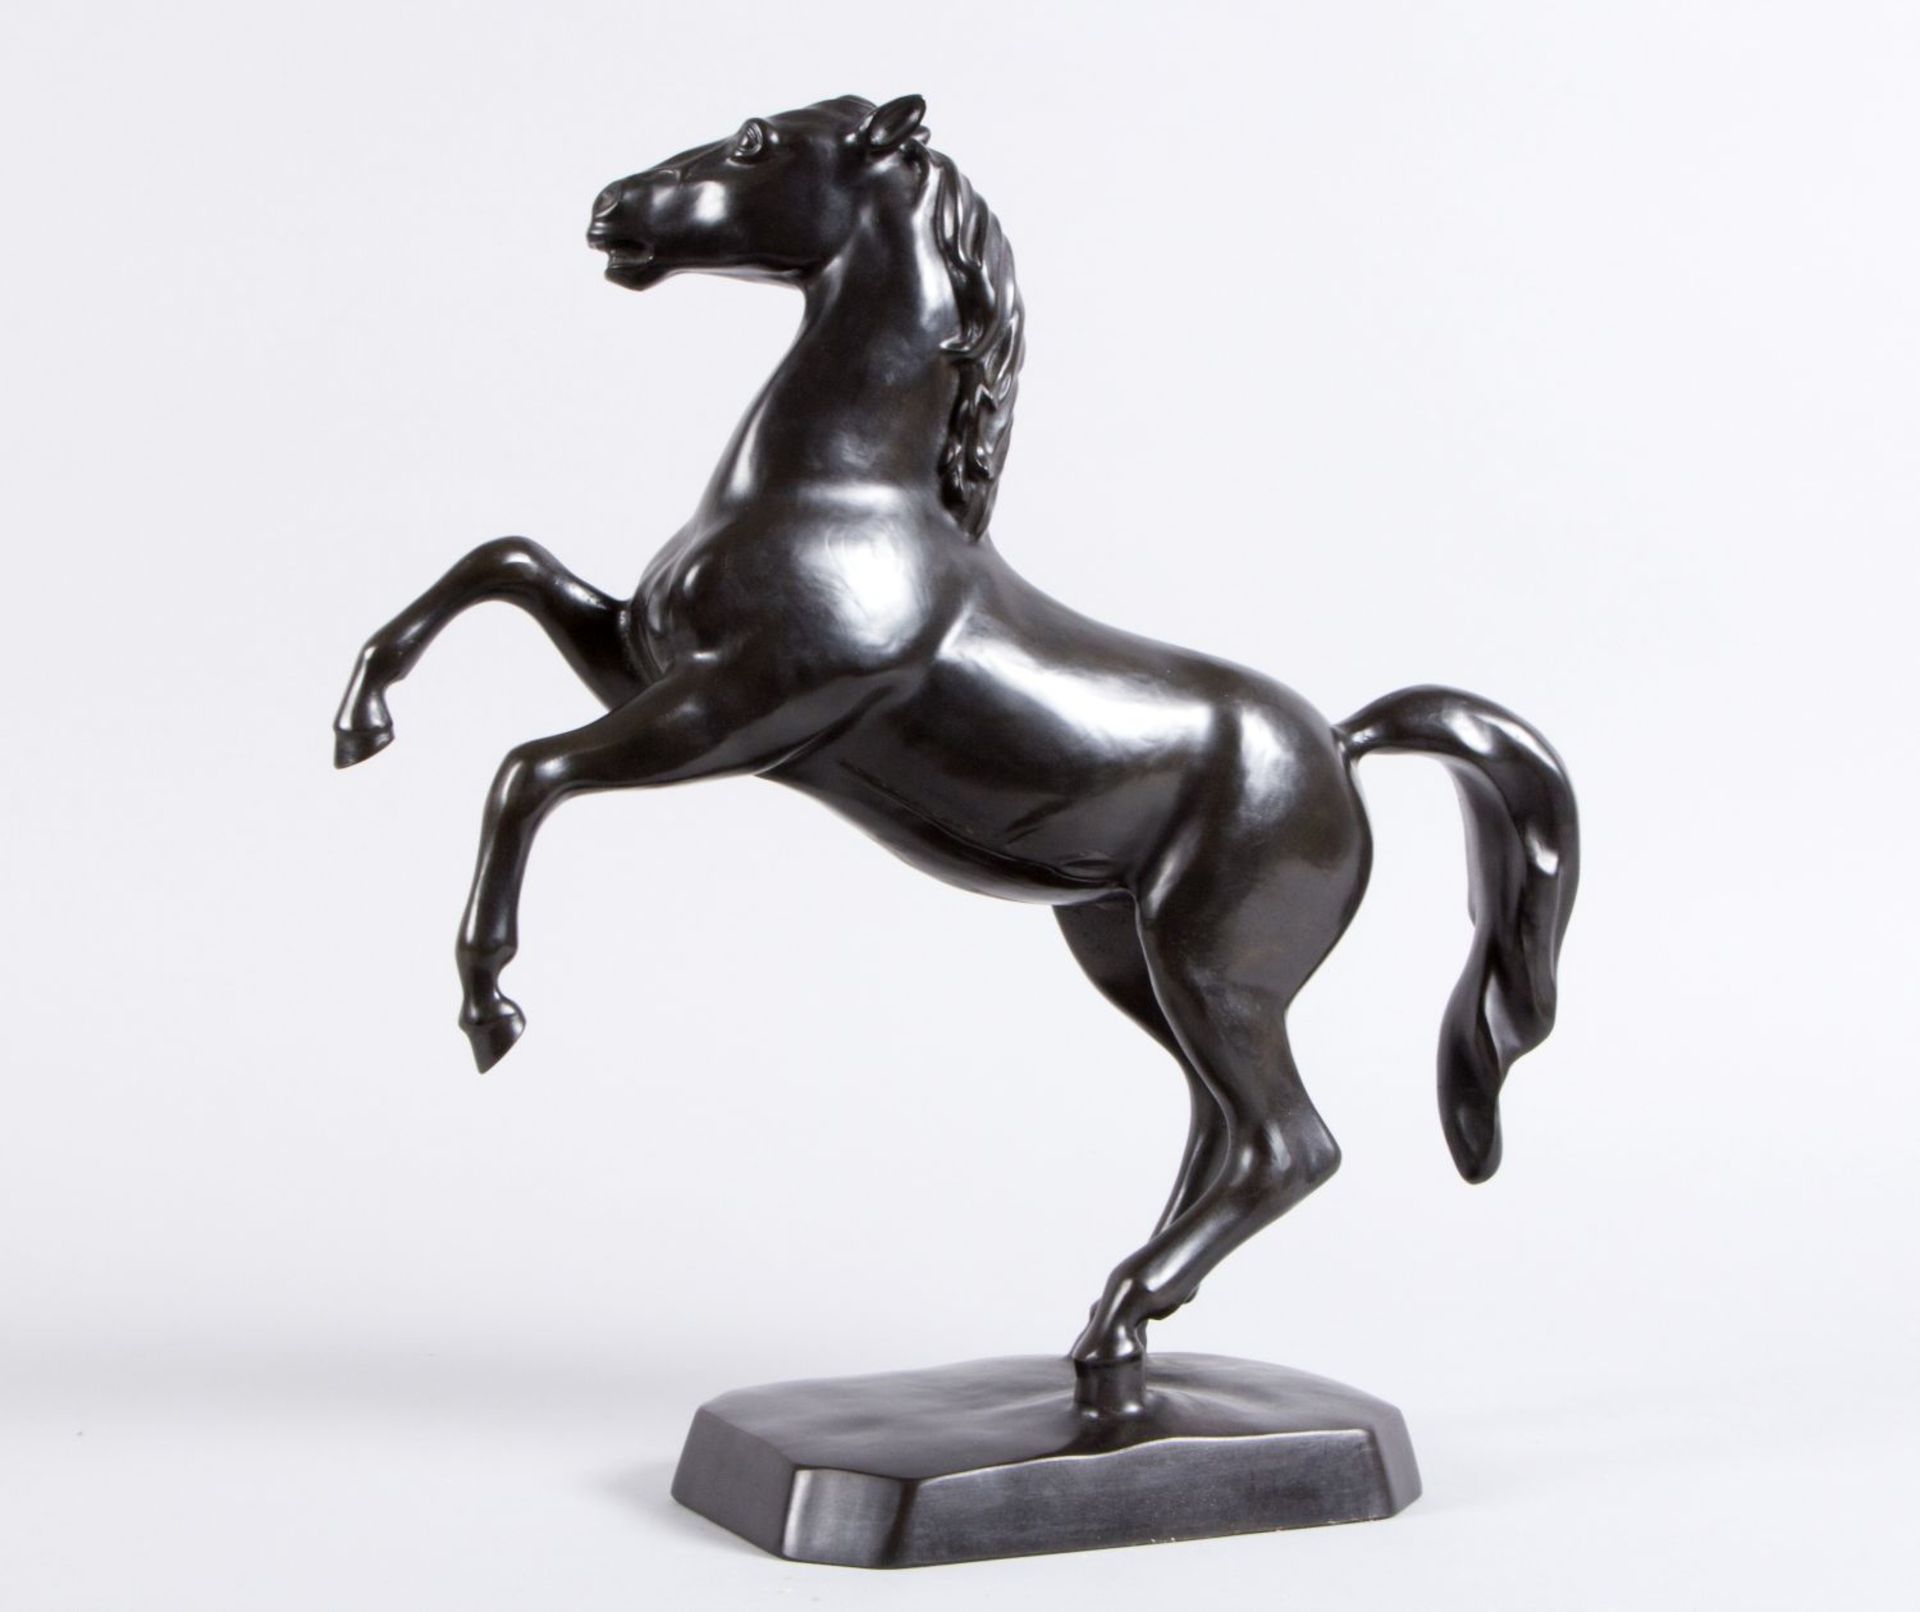 Monogrammist BW Steigendes Pferd. Bronze, schwarz patiniert. Bez. 1991. H. 42,5 cm. - Image 2 of 3